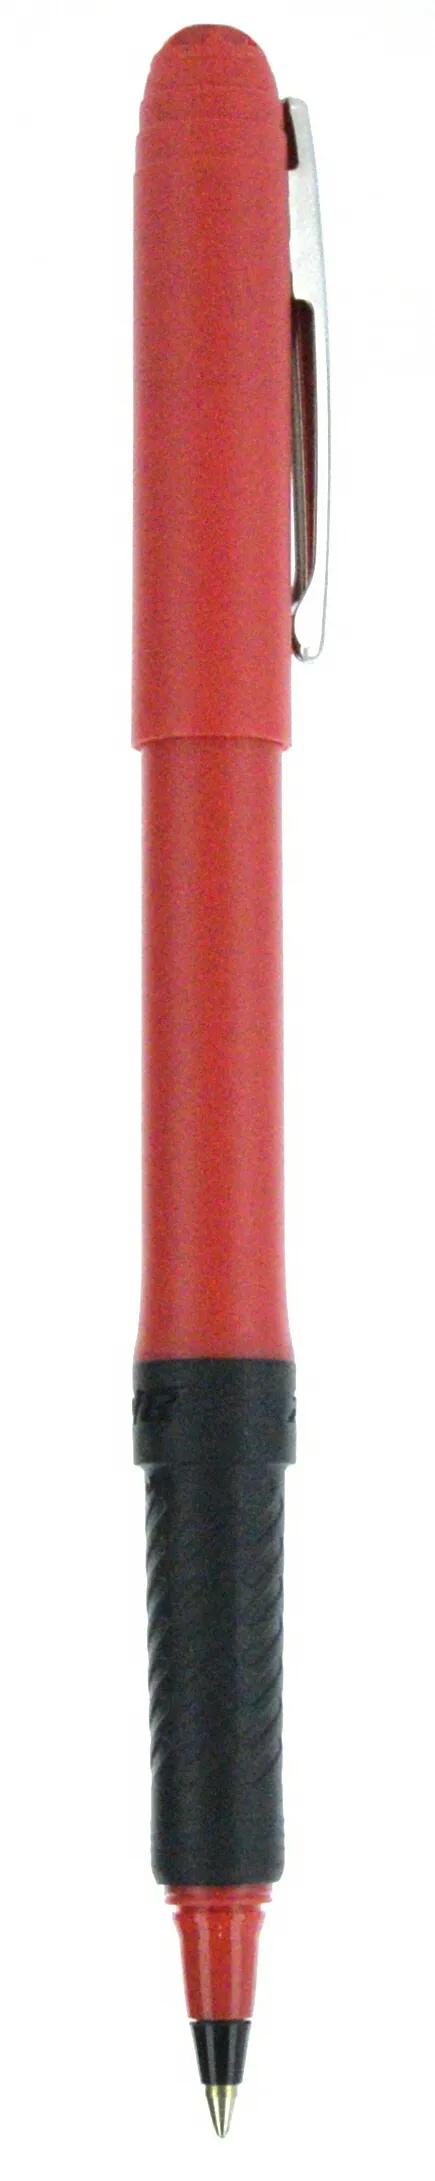 BIC® Grip Roller Pen 69 of 147